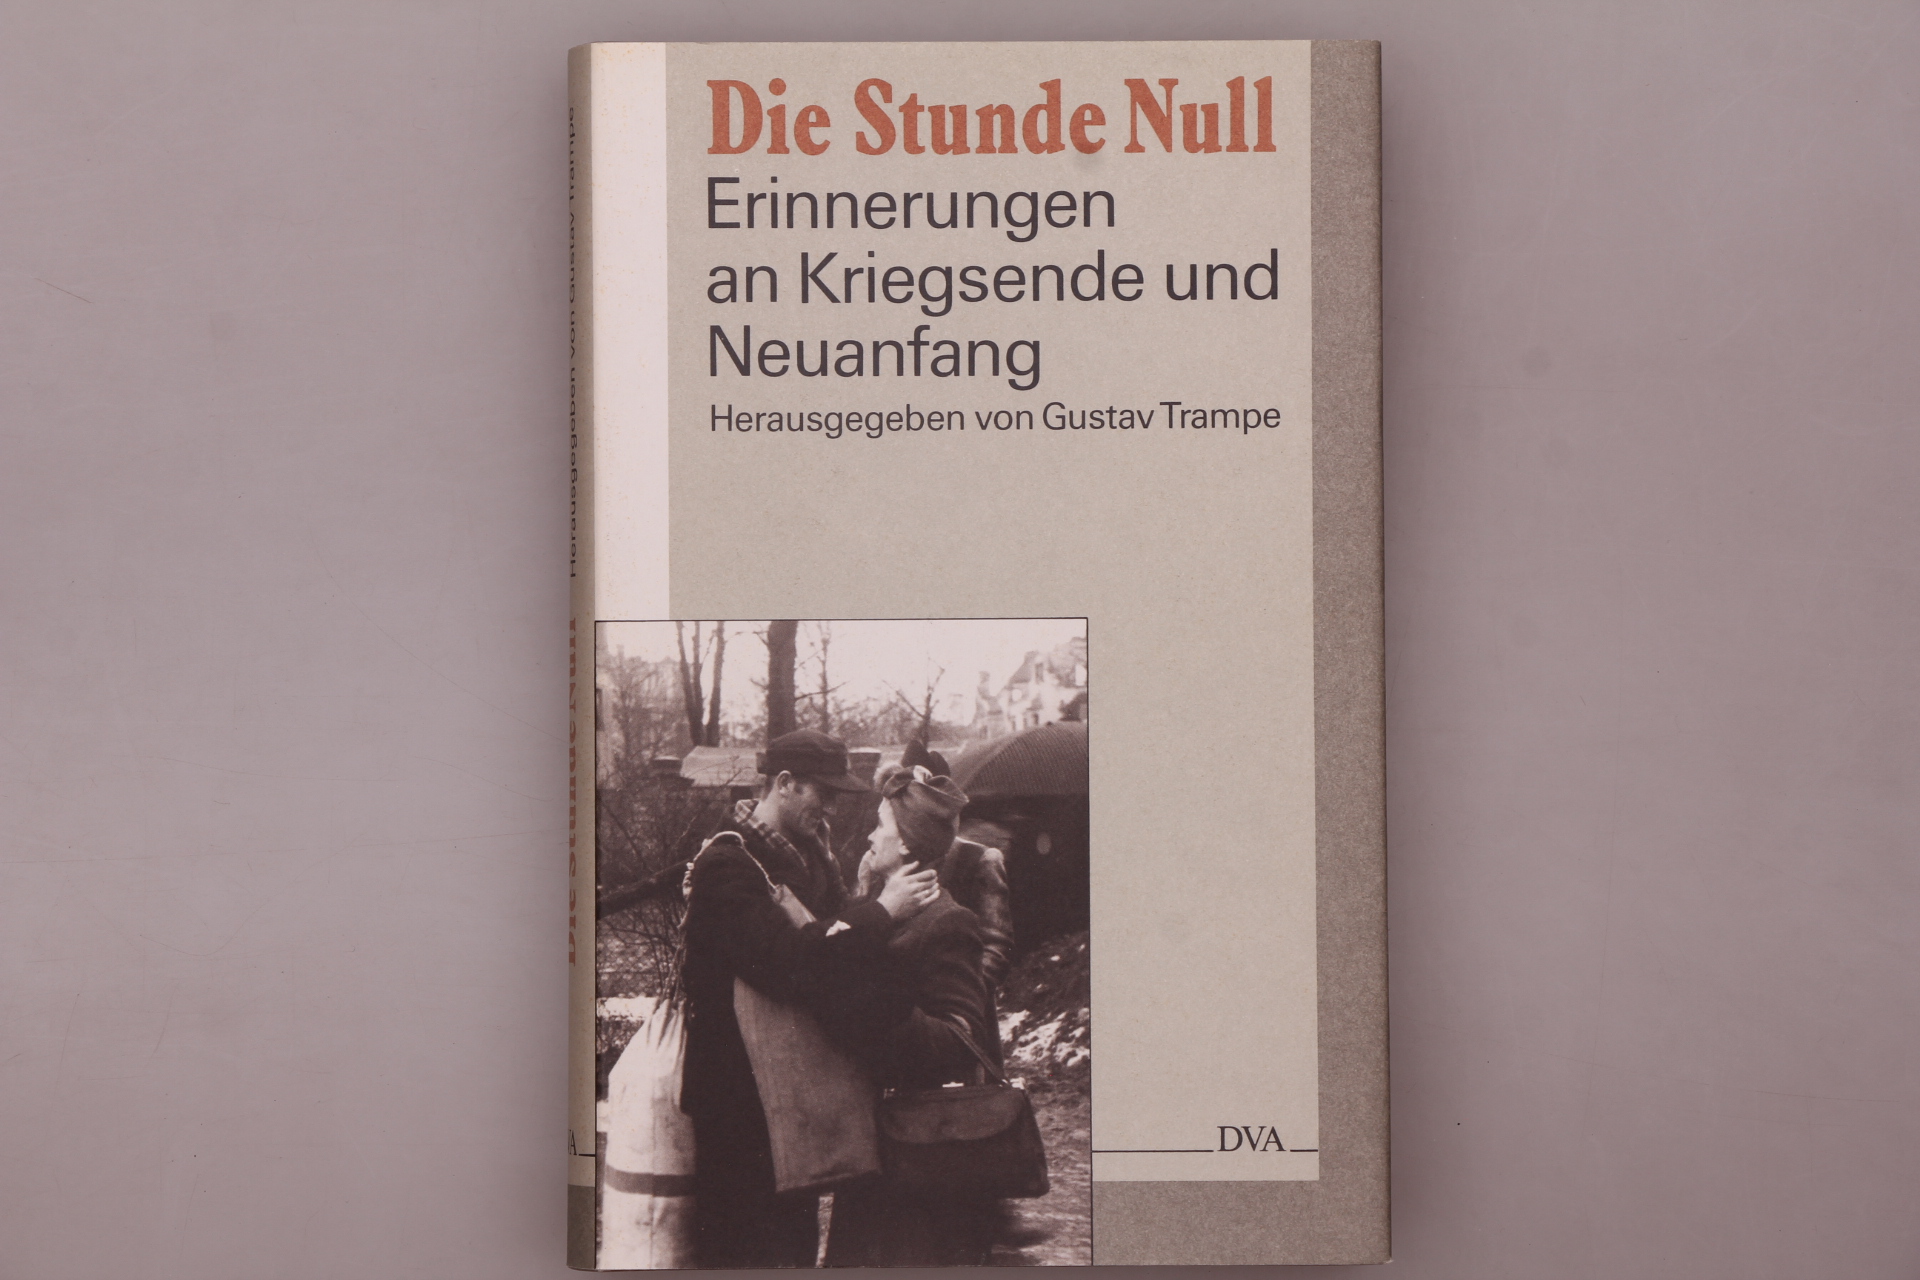 DIE STUNDE NULL. Erinnerungen an Kriegsende und Neuanfang - [Hrsg.]: Trampe, Gustav